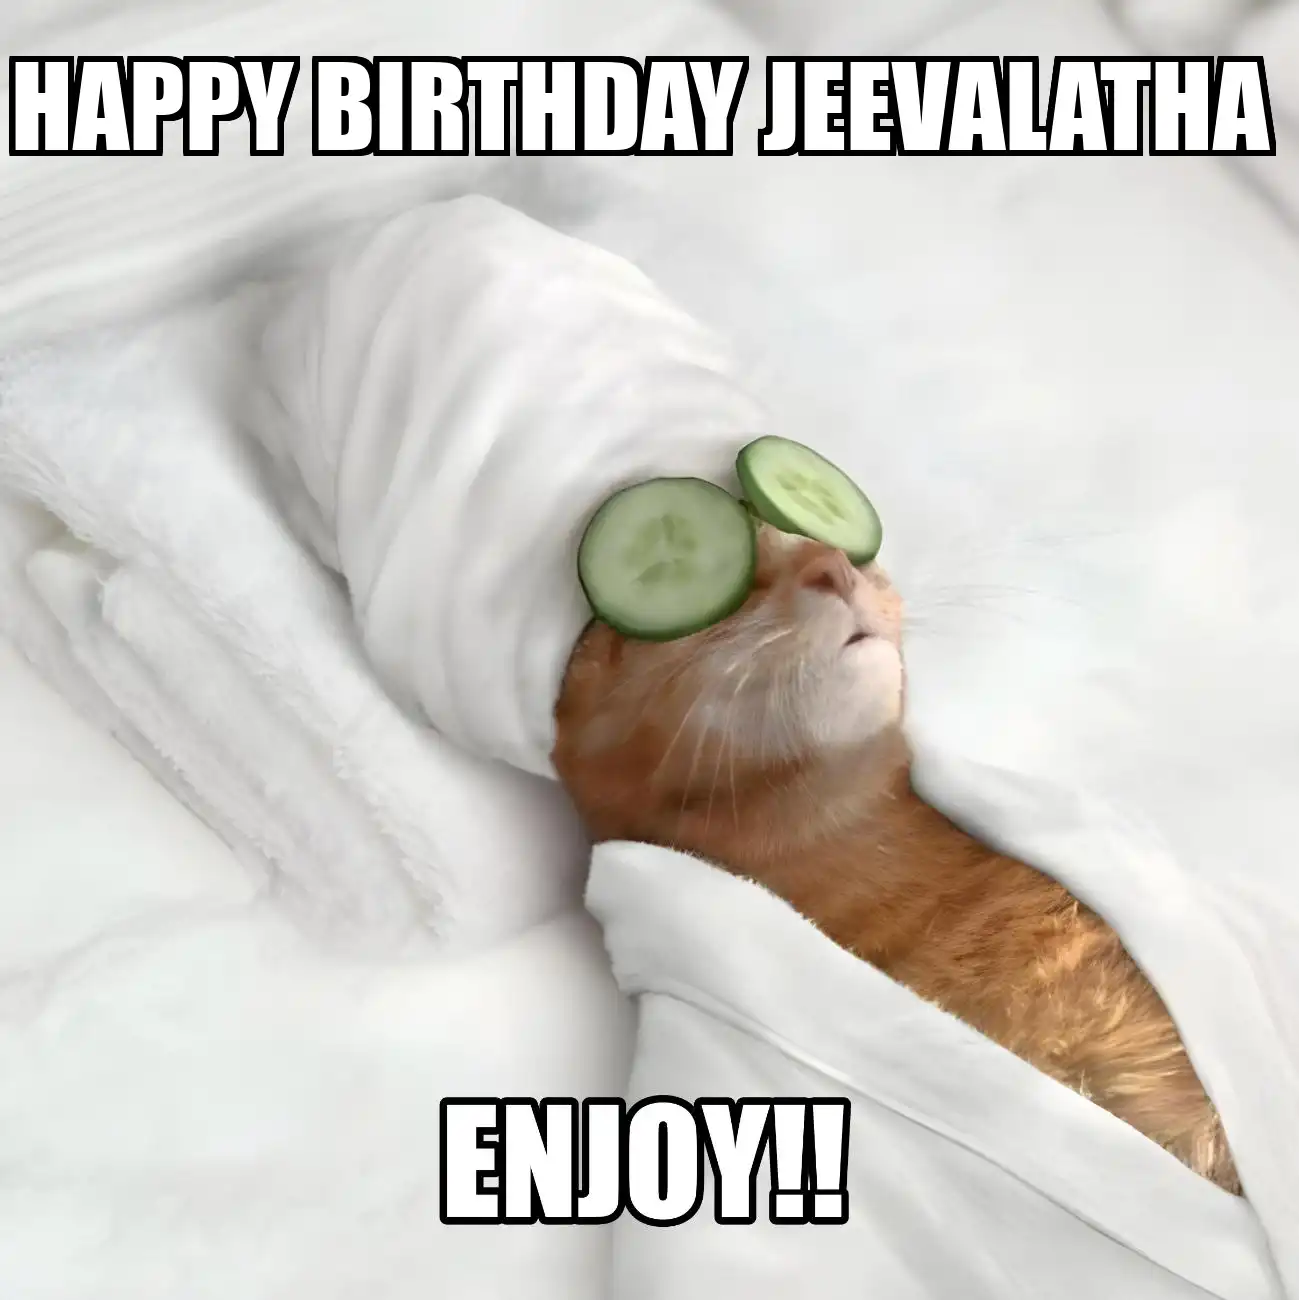 Happy Birthday Jeevalatha Enjoy Cat Meme